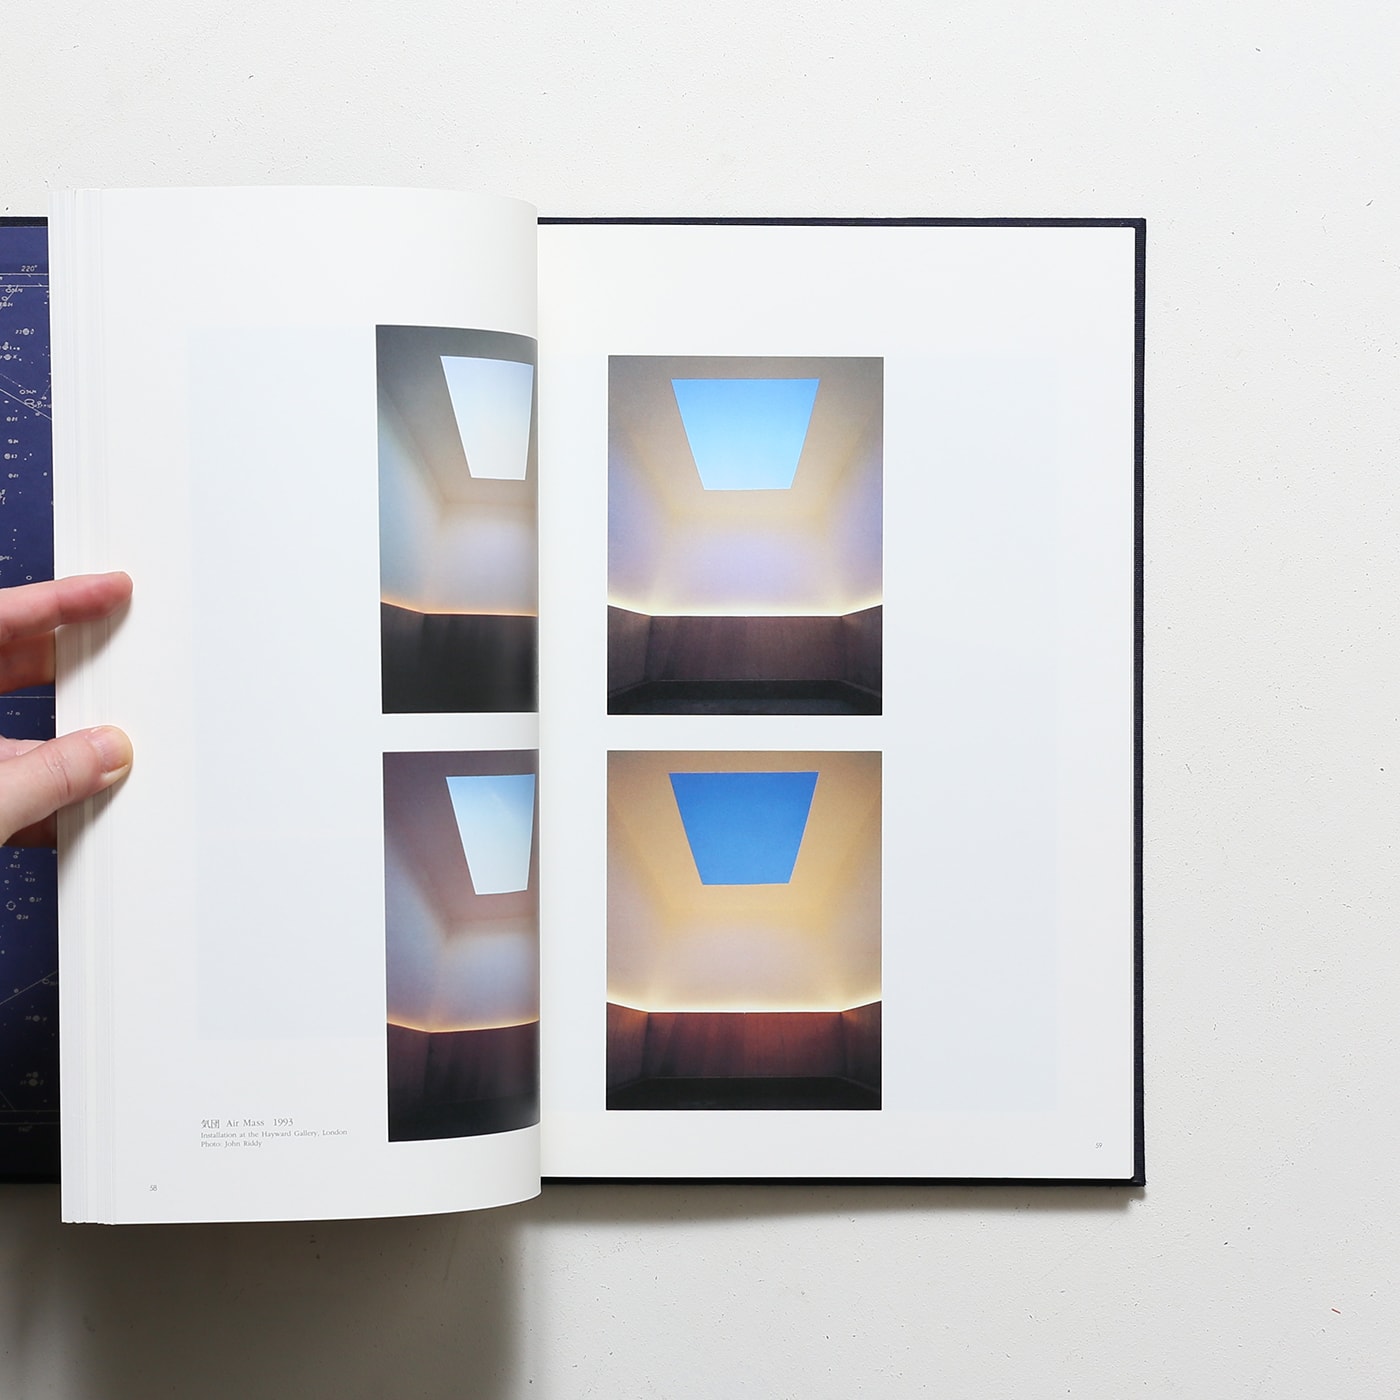 ジェームズ・タレル 未知の光へ | 水戸芸術館現代美術ギャラリー 